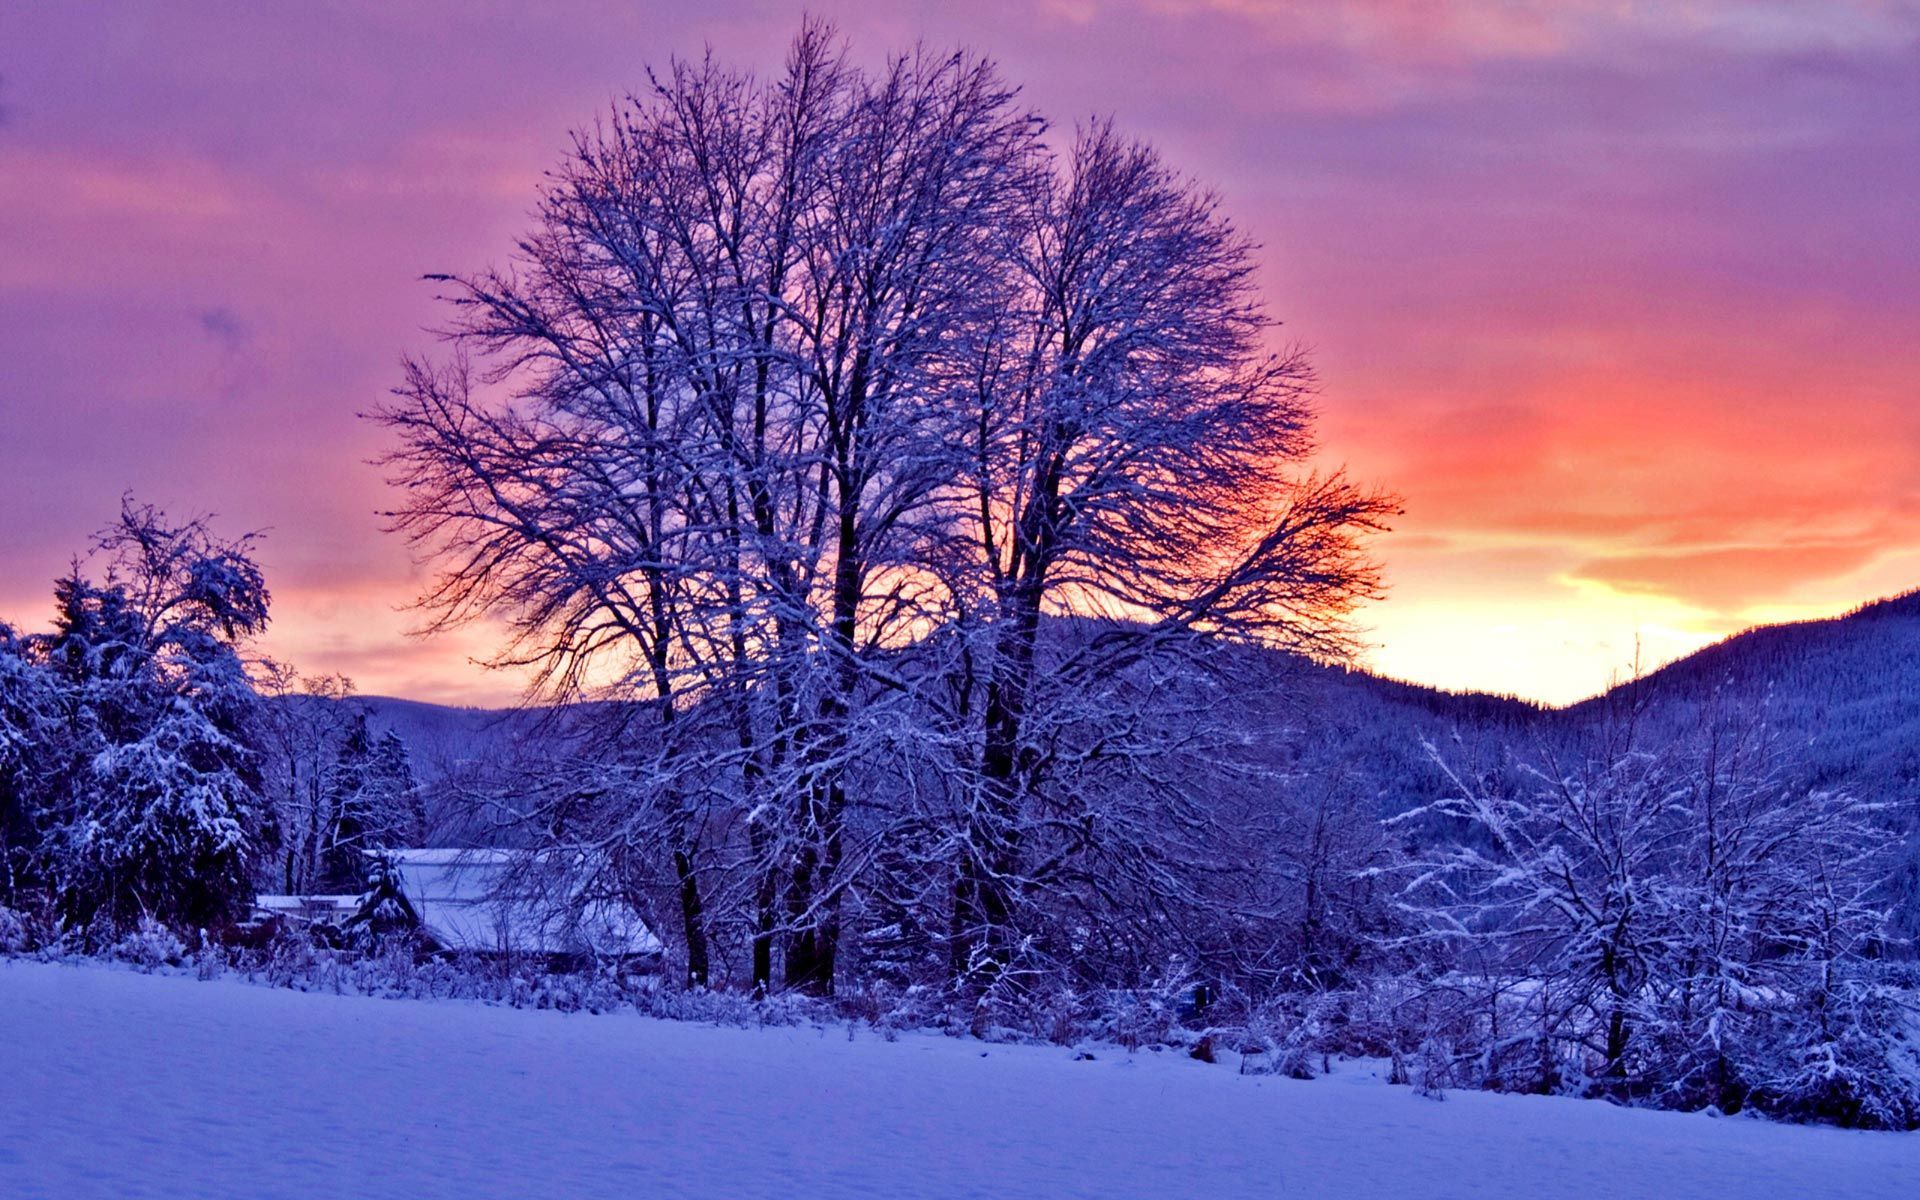 Winter Sunset. Winter wallpaper, Winter wallpaper hd, Desktop background image